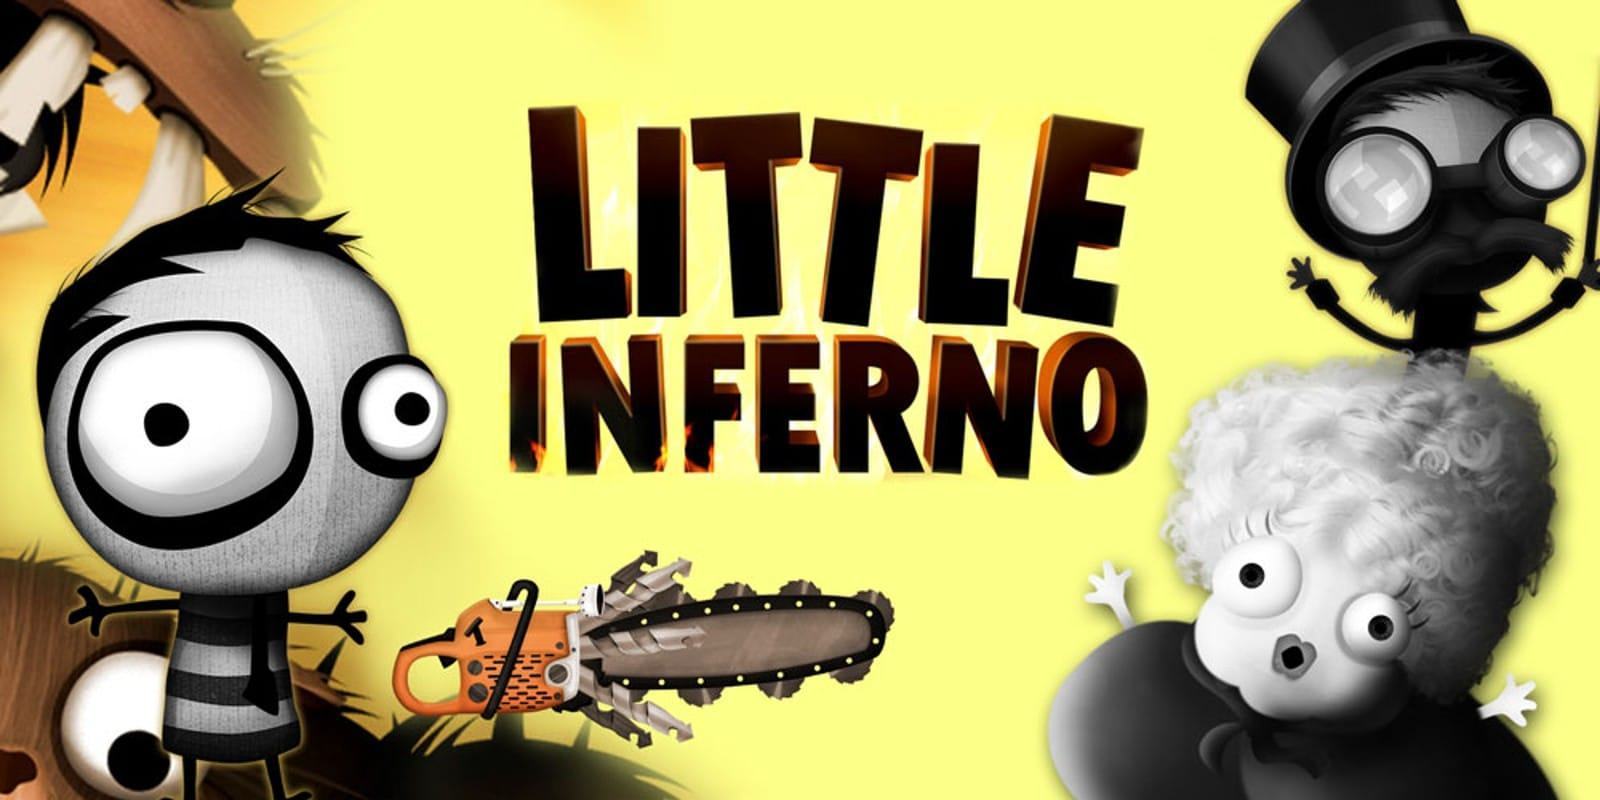 Little Inferno è il nuovo gioco gratis sul Epic Games Store 2